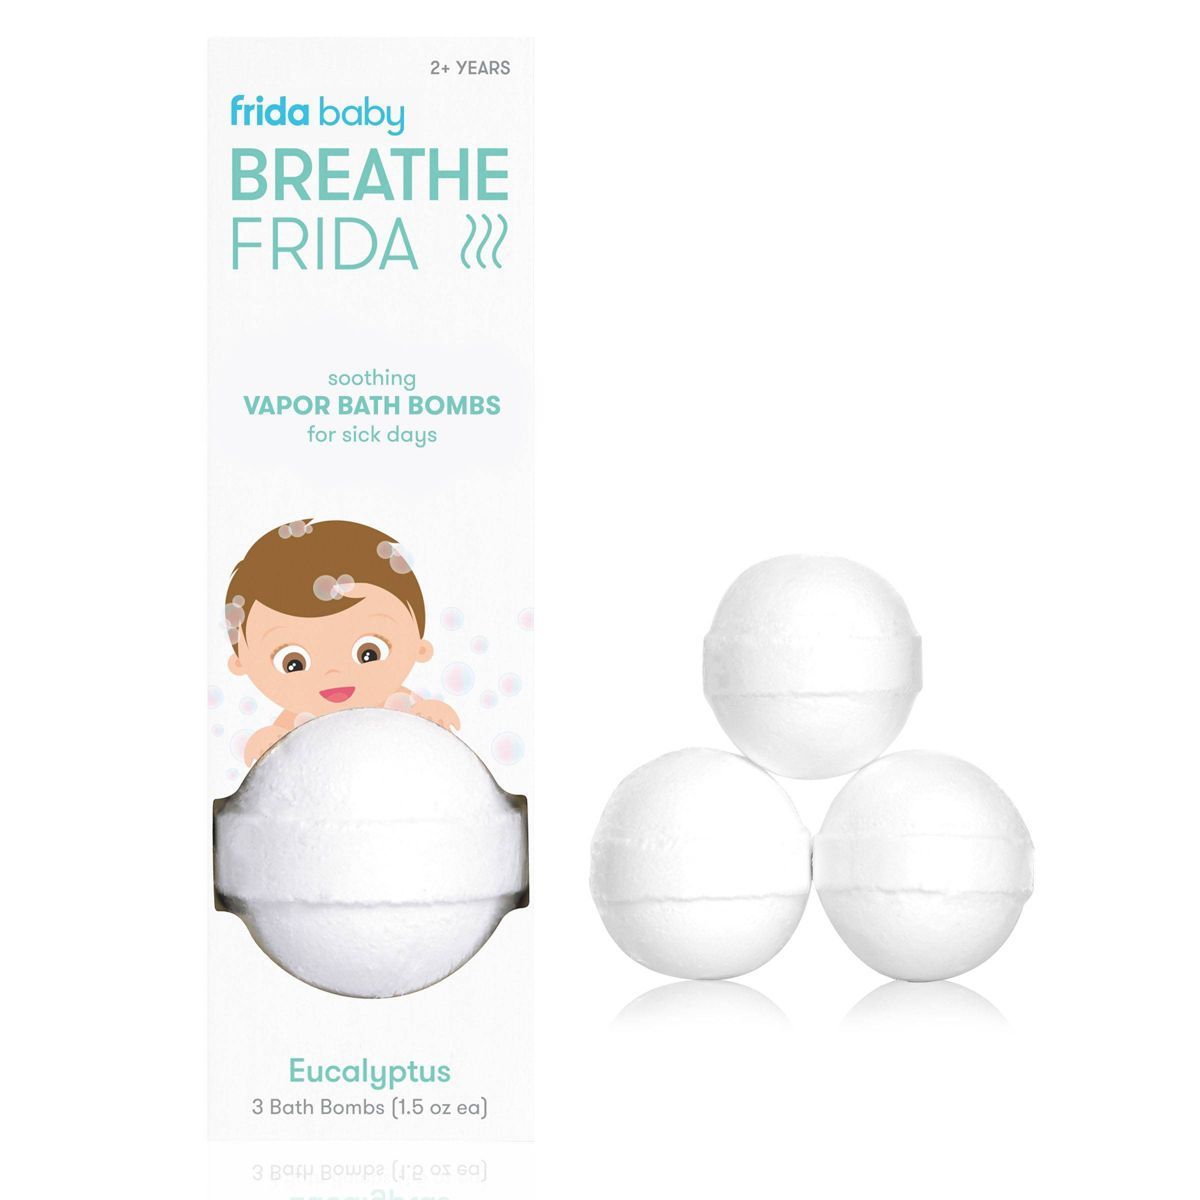 Frida Baby Natural Vapor Bath Bombs for Sick Day Comfort - BreatheFrida Vapor Bath Bombs - 3ct | Target